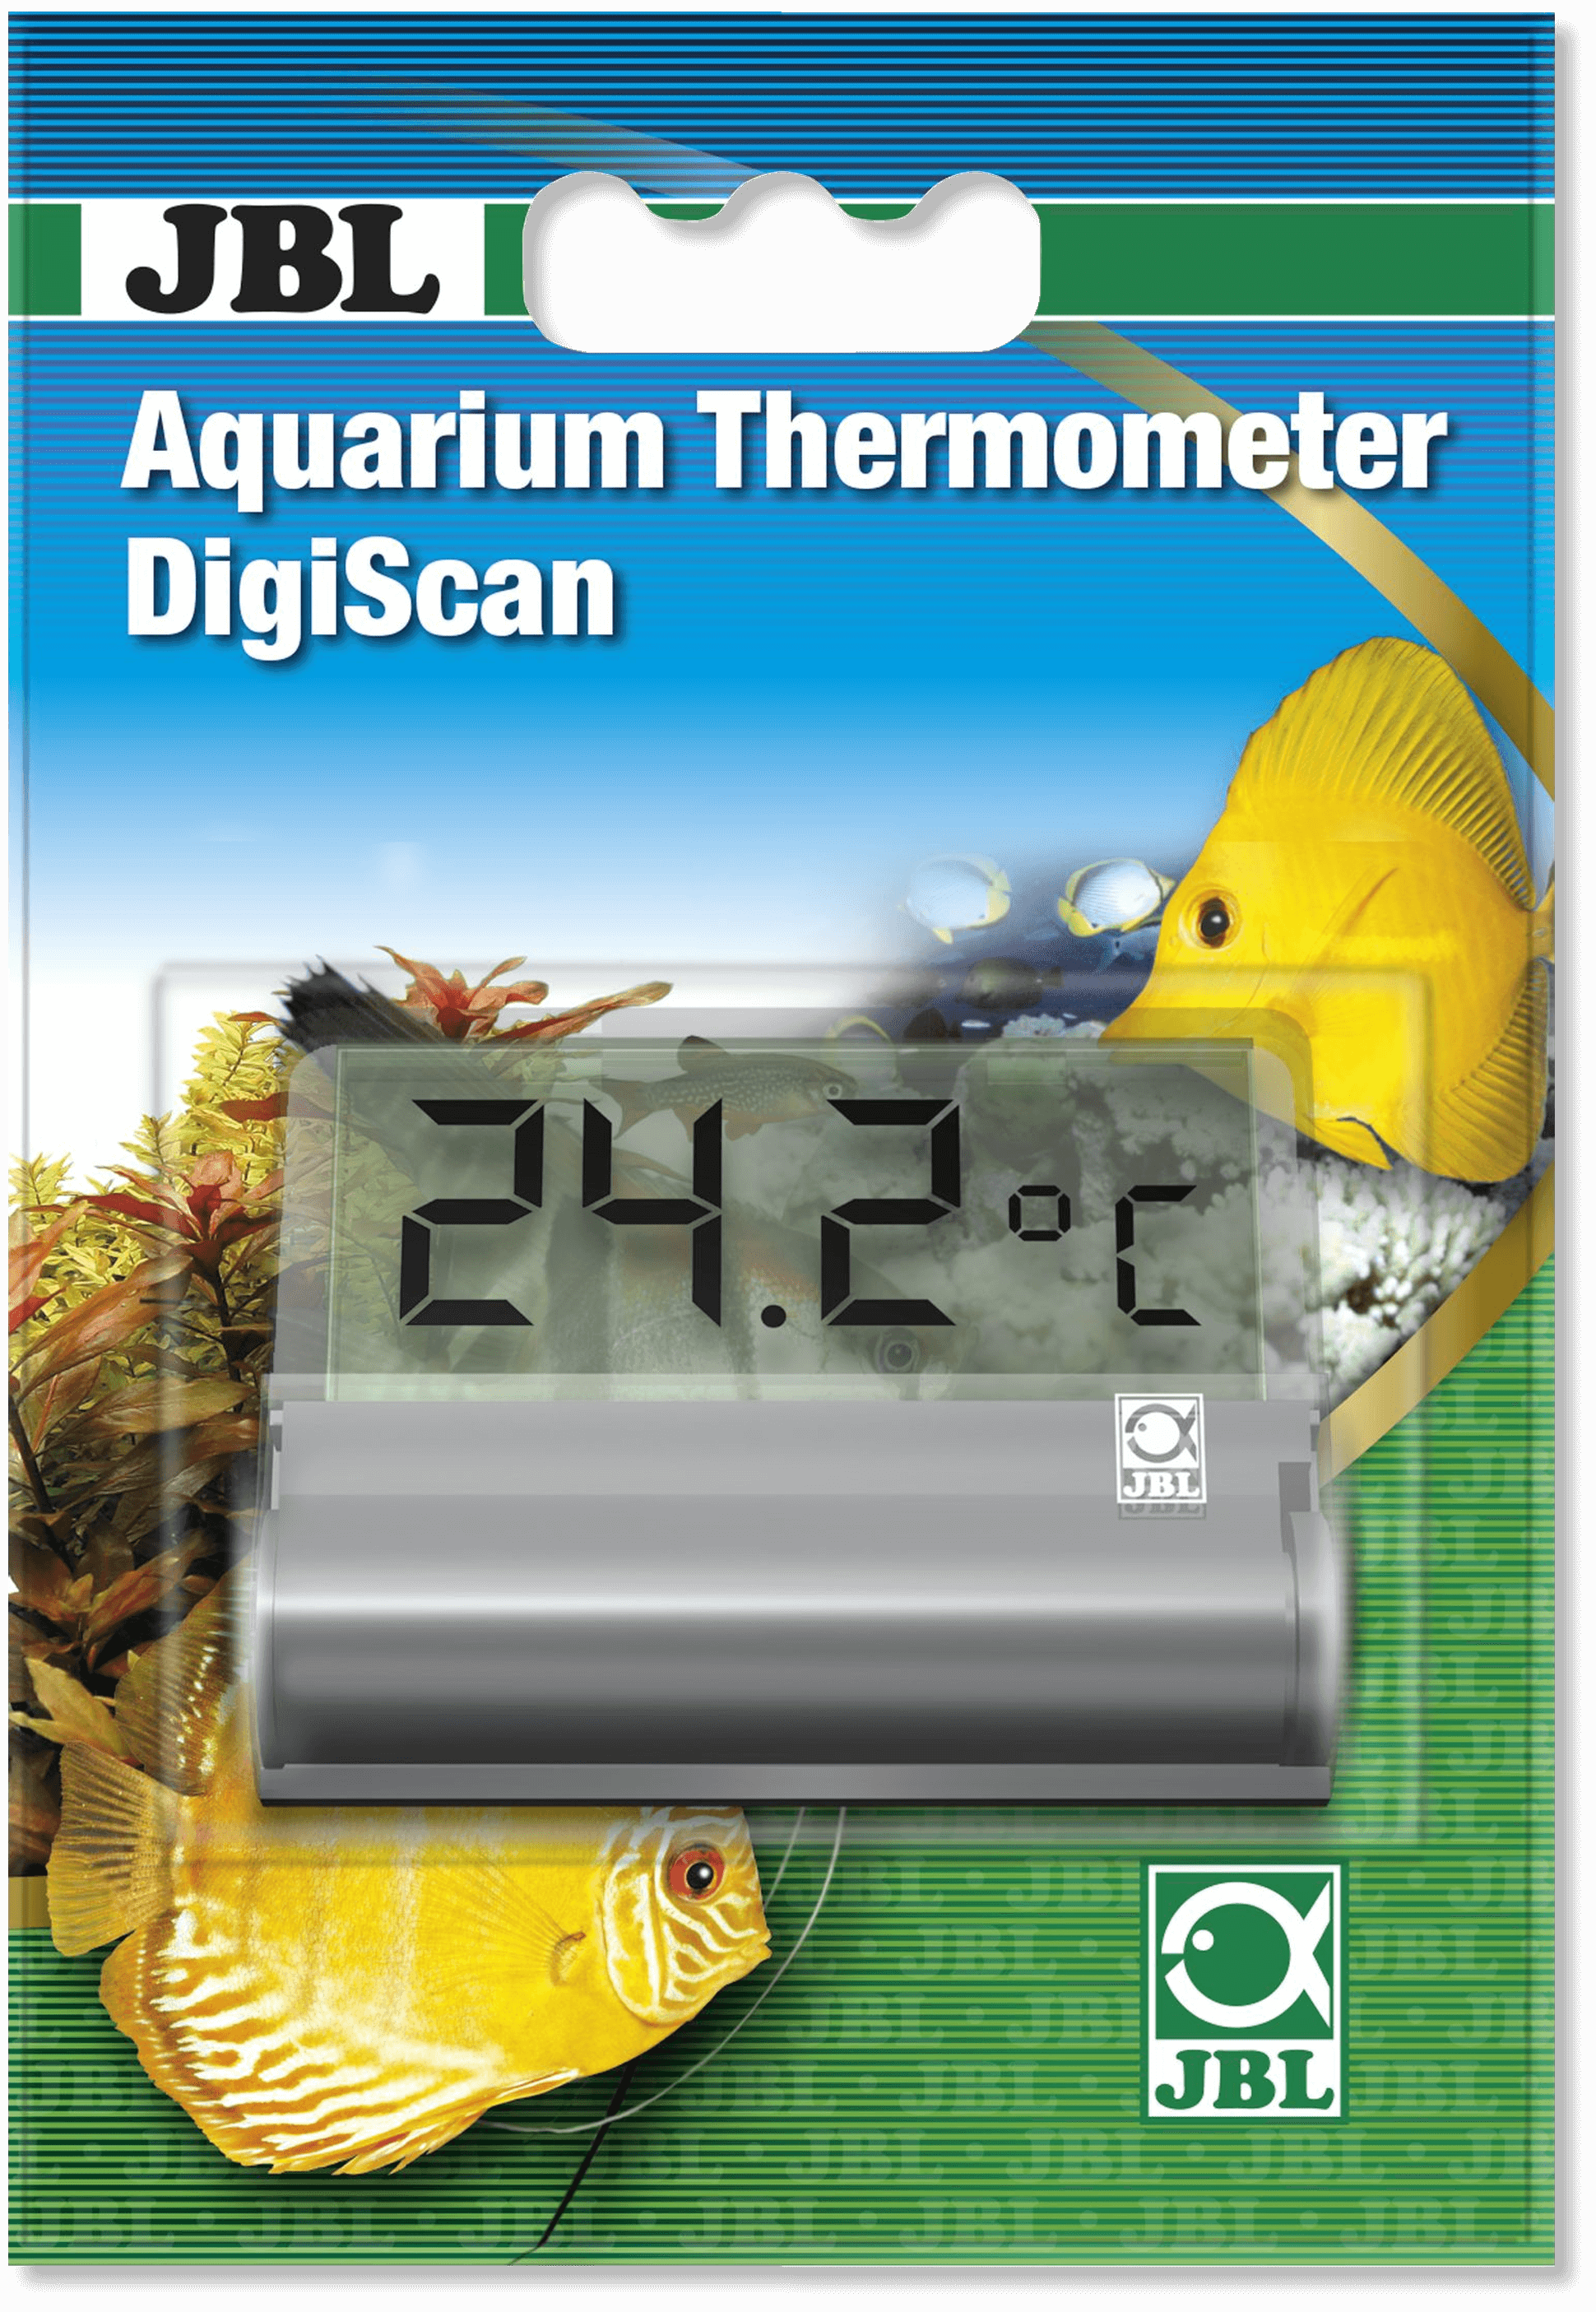 JBL Aquarium Thermometer DigiScan pour aquarium - 10.98€